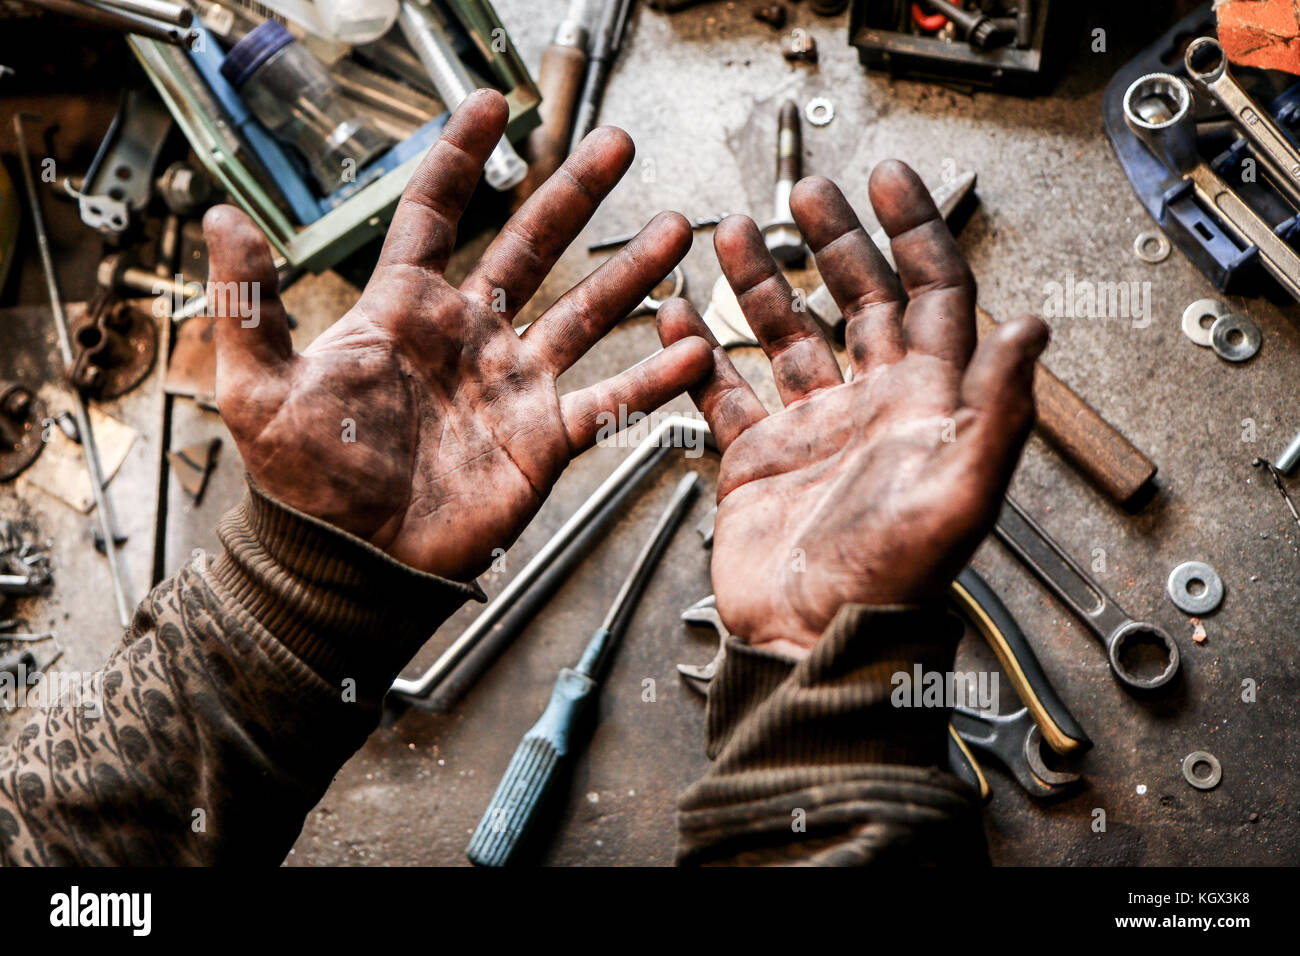 Ein Bild von schmutzigen Händen eines Typen aus der Garage. Harte und schmutzige Arbeit steckt hinter ihm. Stockfoto